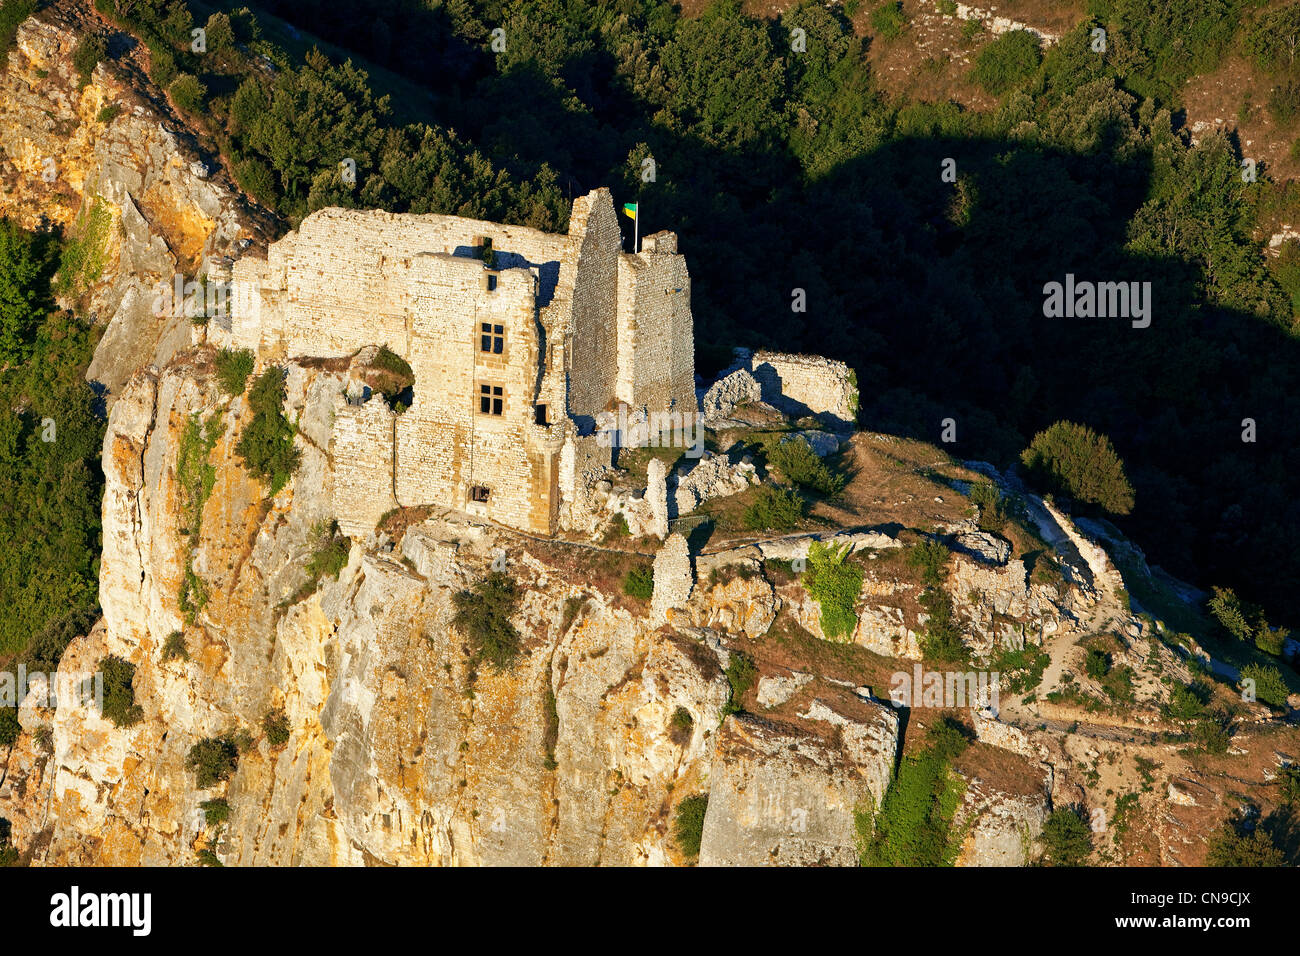 France, Ardeche, Saint Peray, Chateau de Crussol, 12th century castle (aerial view) Stock Photo